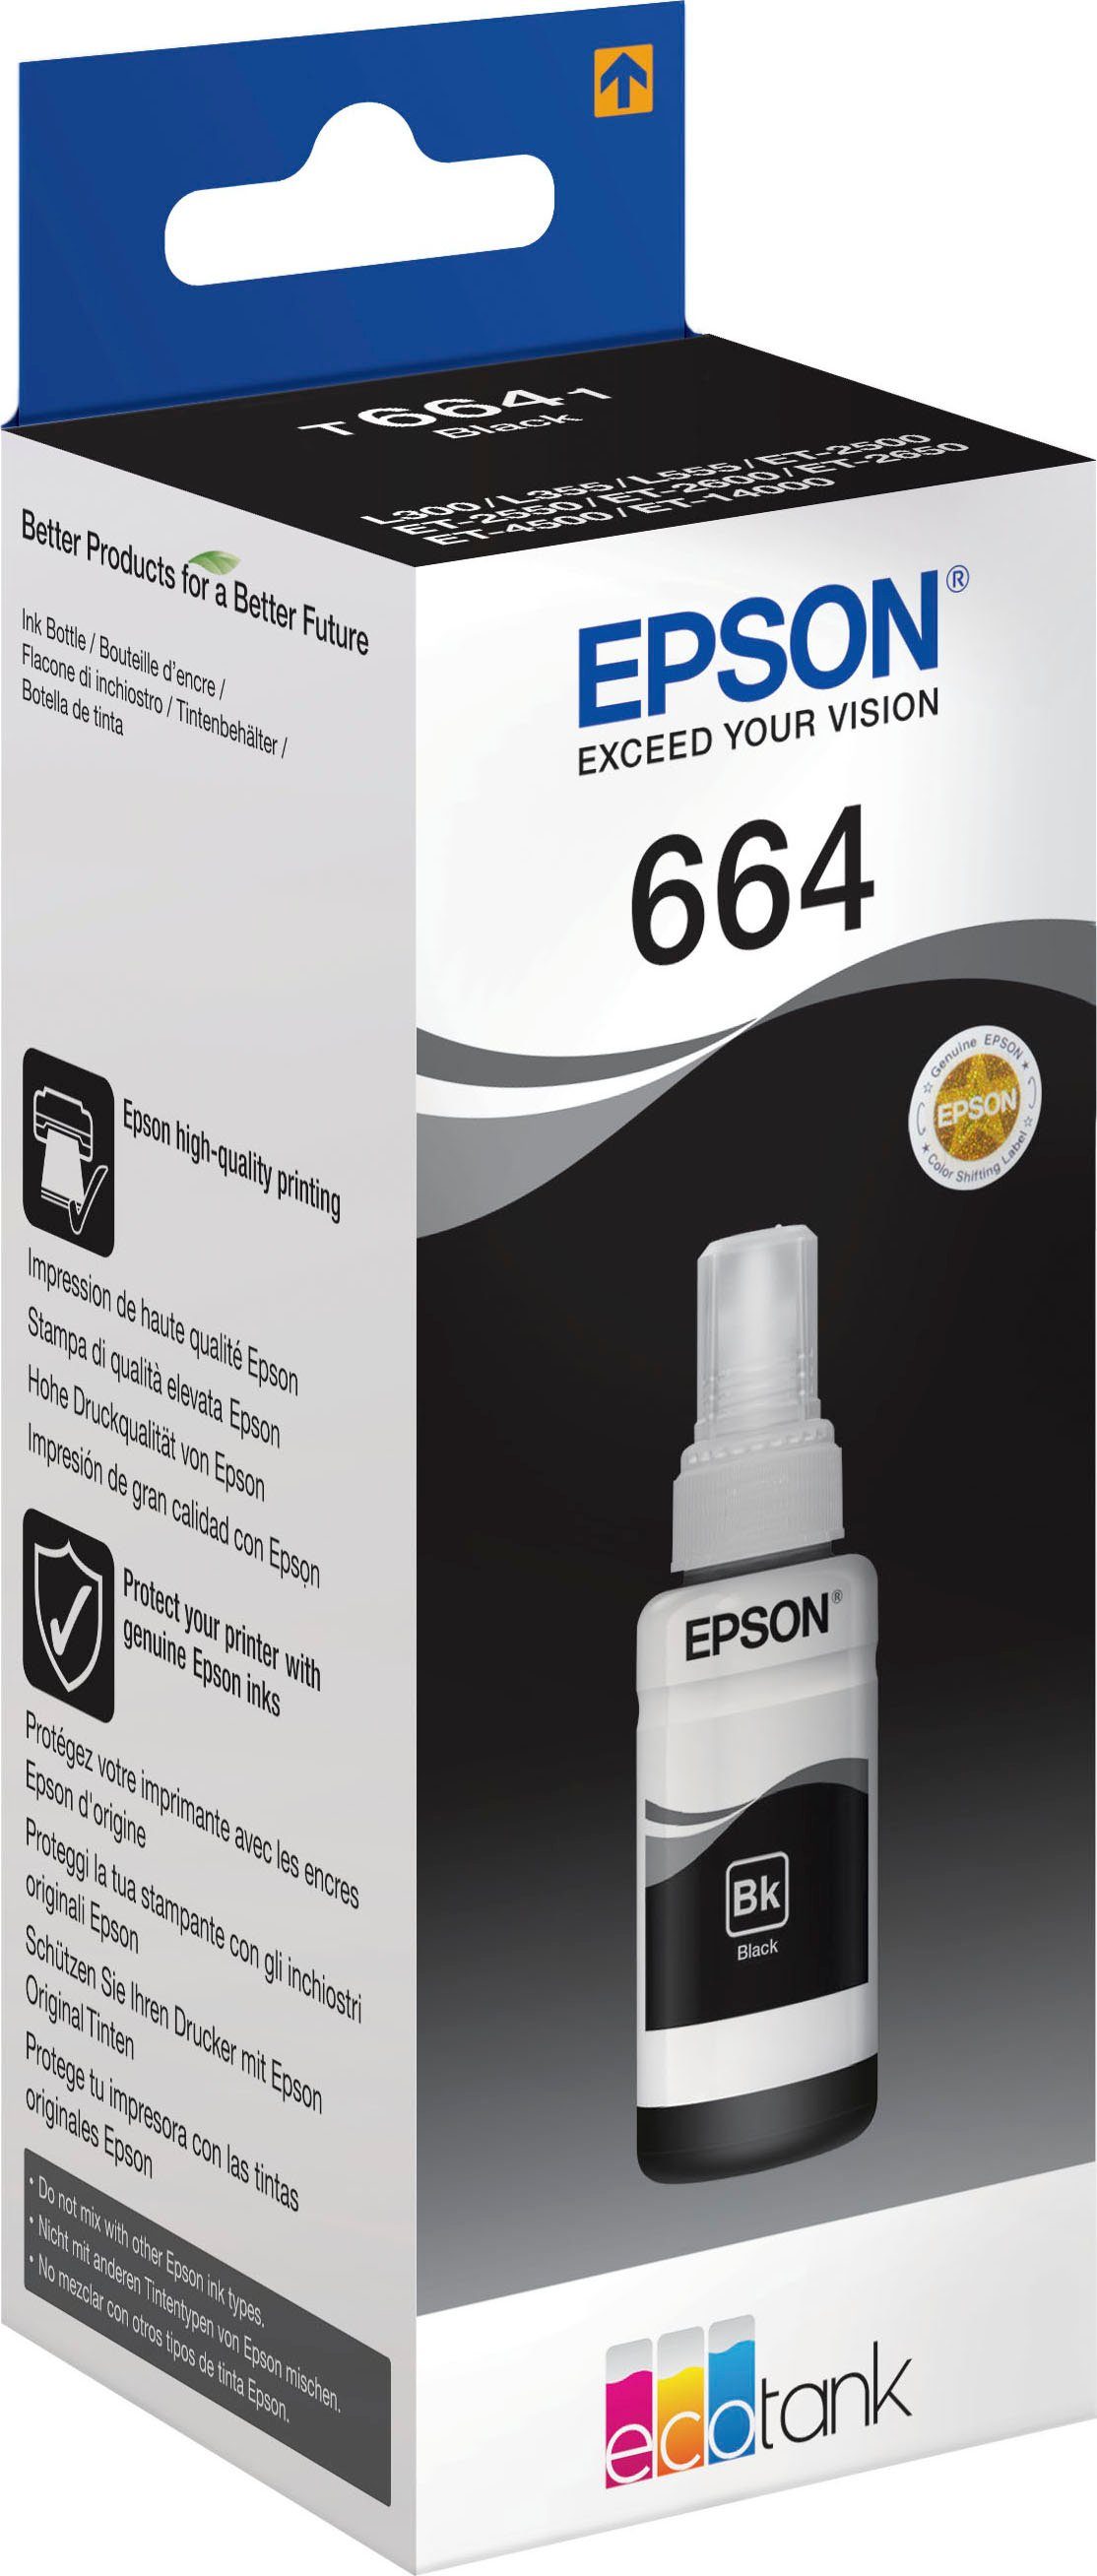 Nachfülltinte Epson (für original 664 schwarz) Nachfülltinte 1x, T6641 EPSON, black